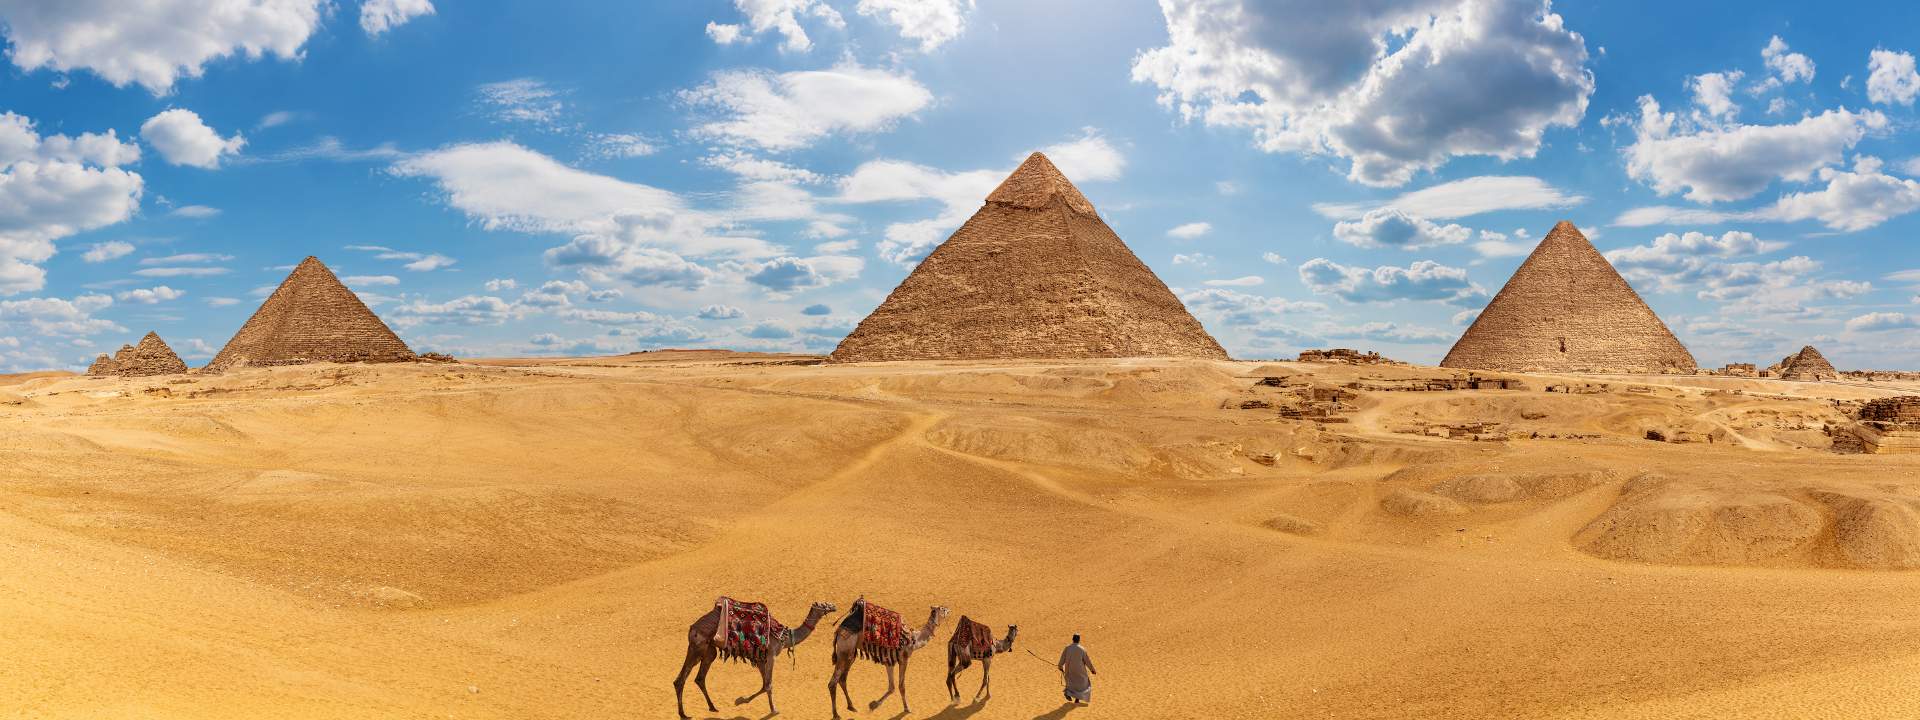 8 giorni di crociera per scoprire l'Egitto, Israele e la Giordania